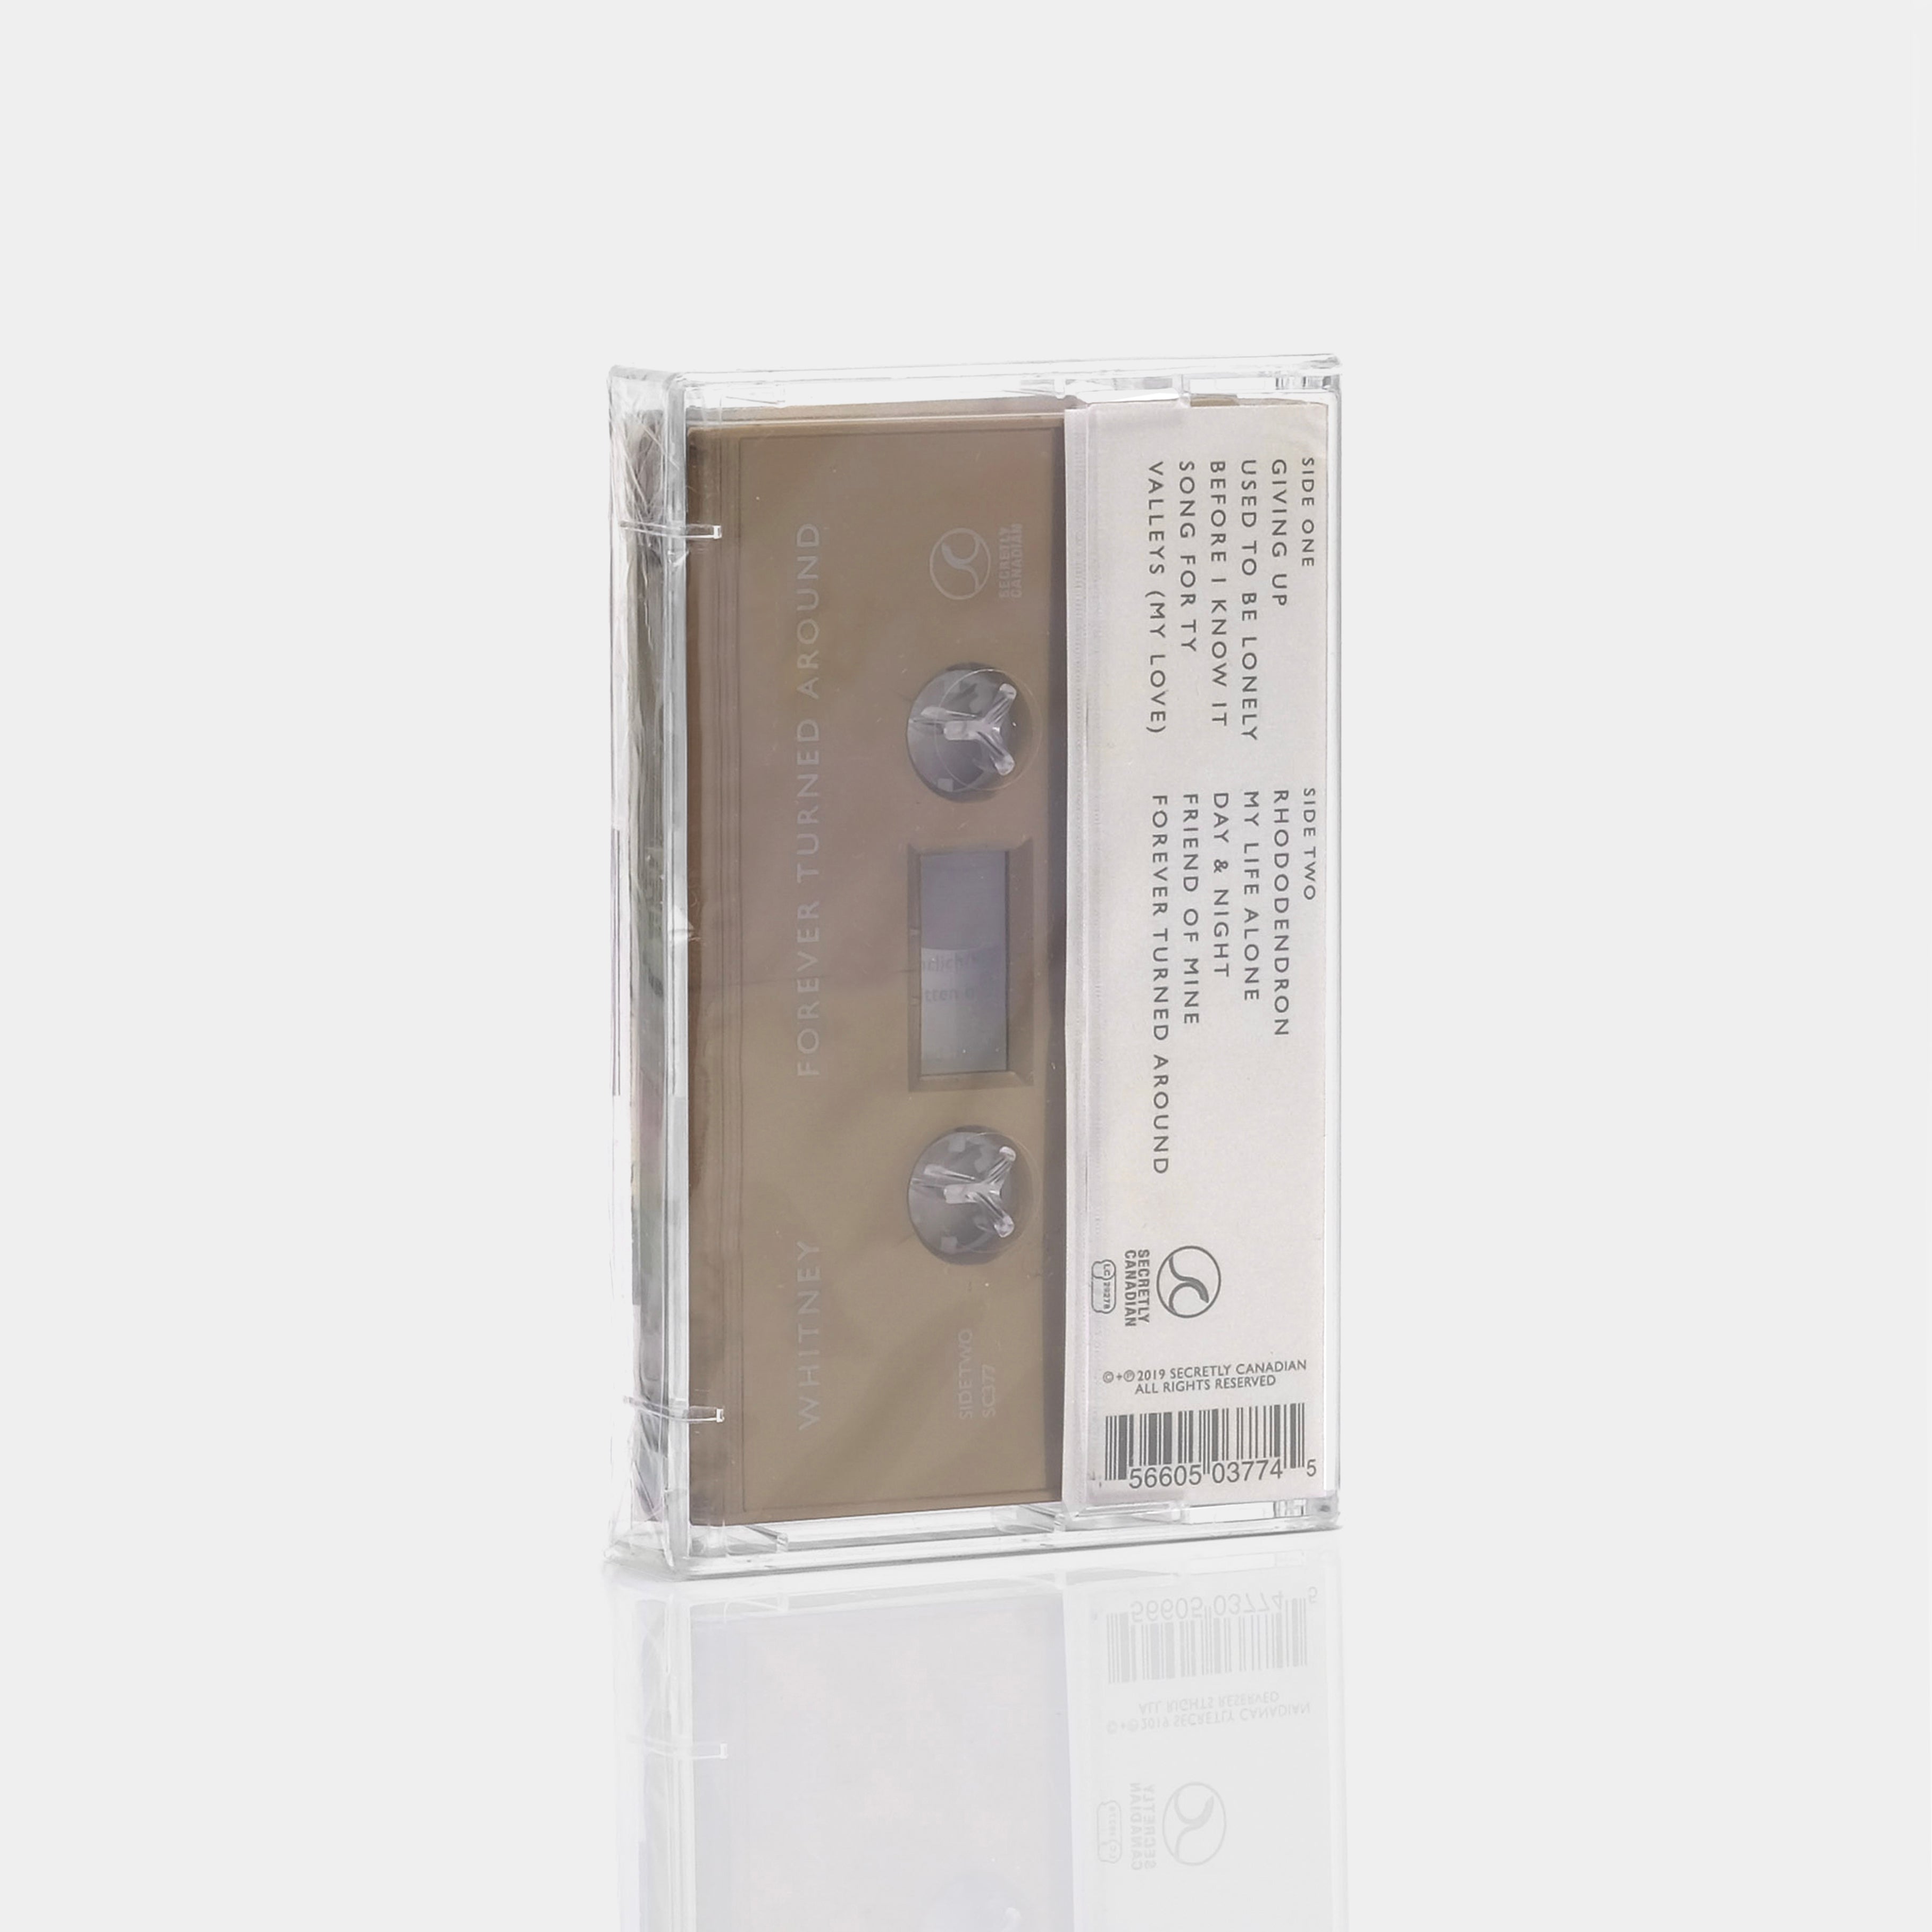 Whitney - Forever Turned Around Cassette Tape